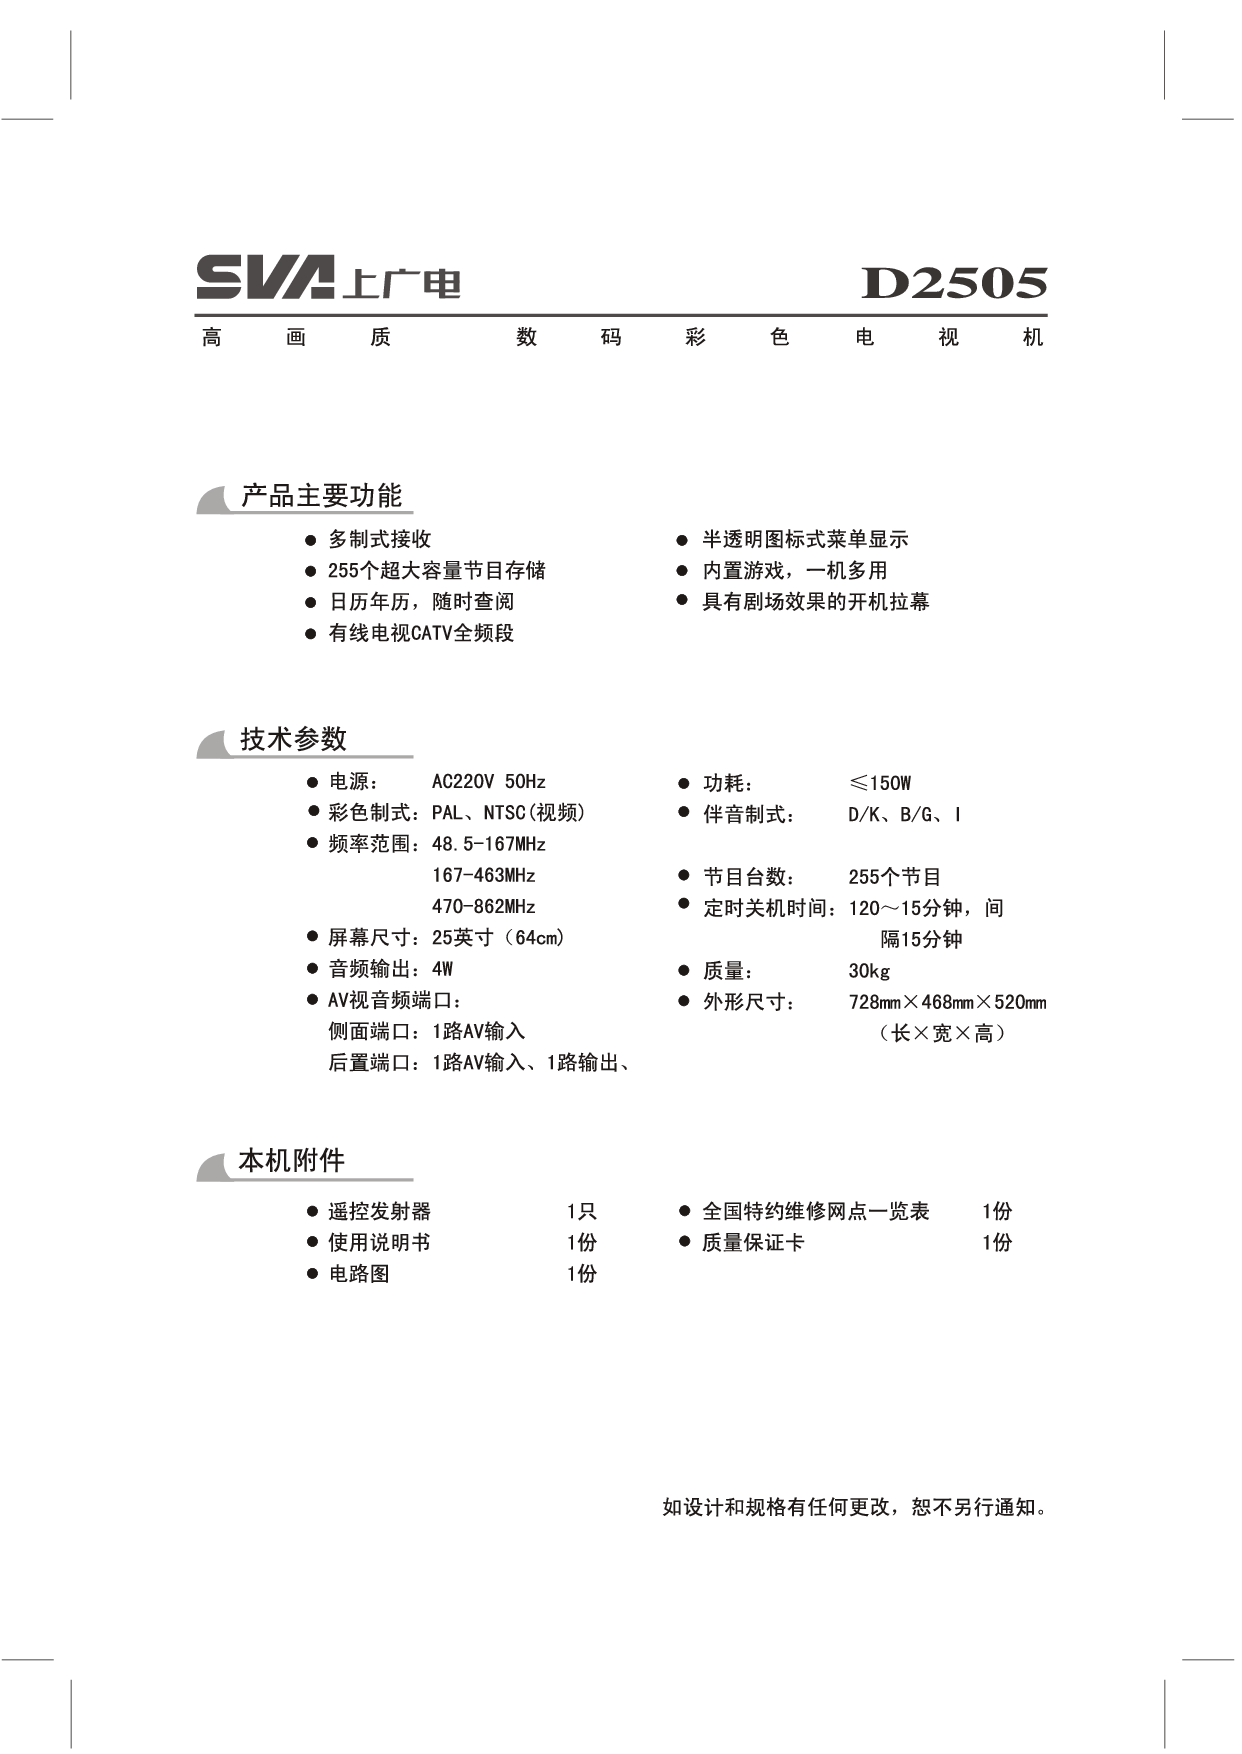 上广电 SVA D2505 使用说明书 封面